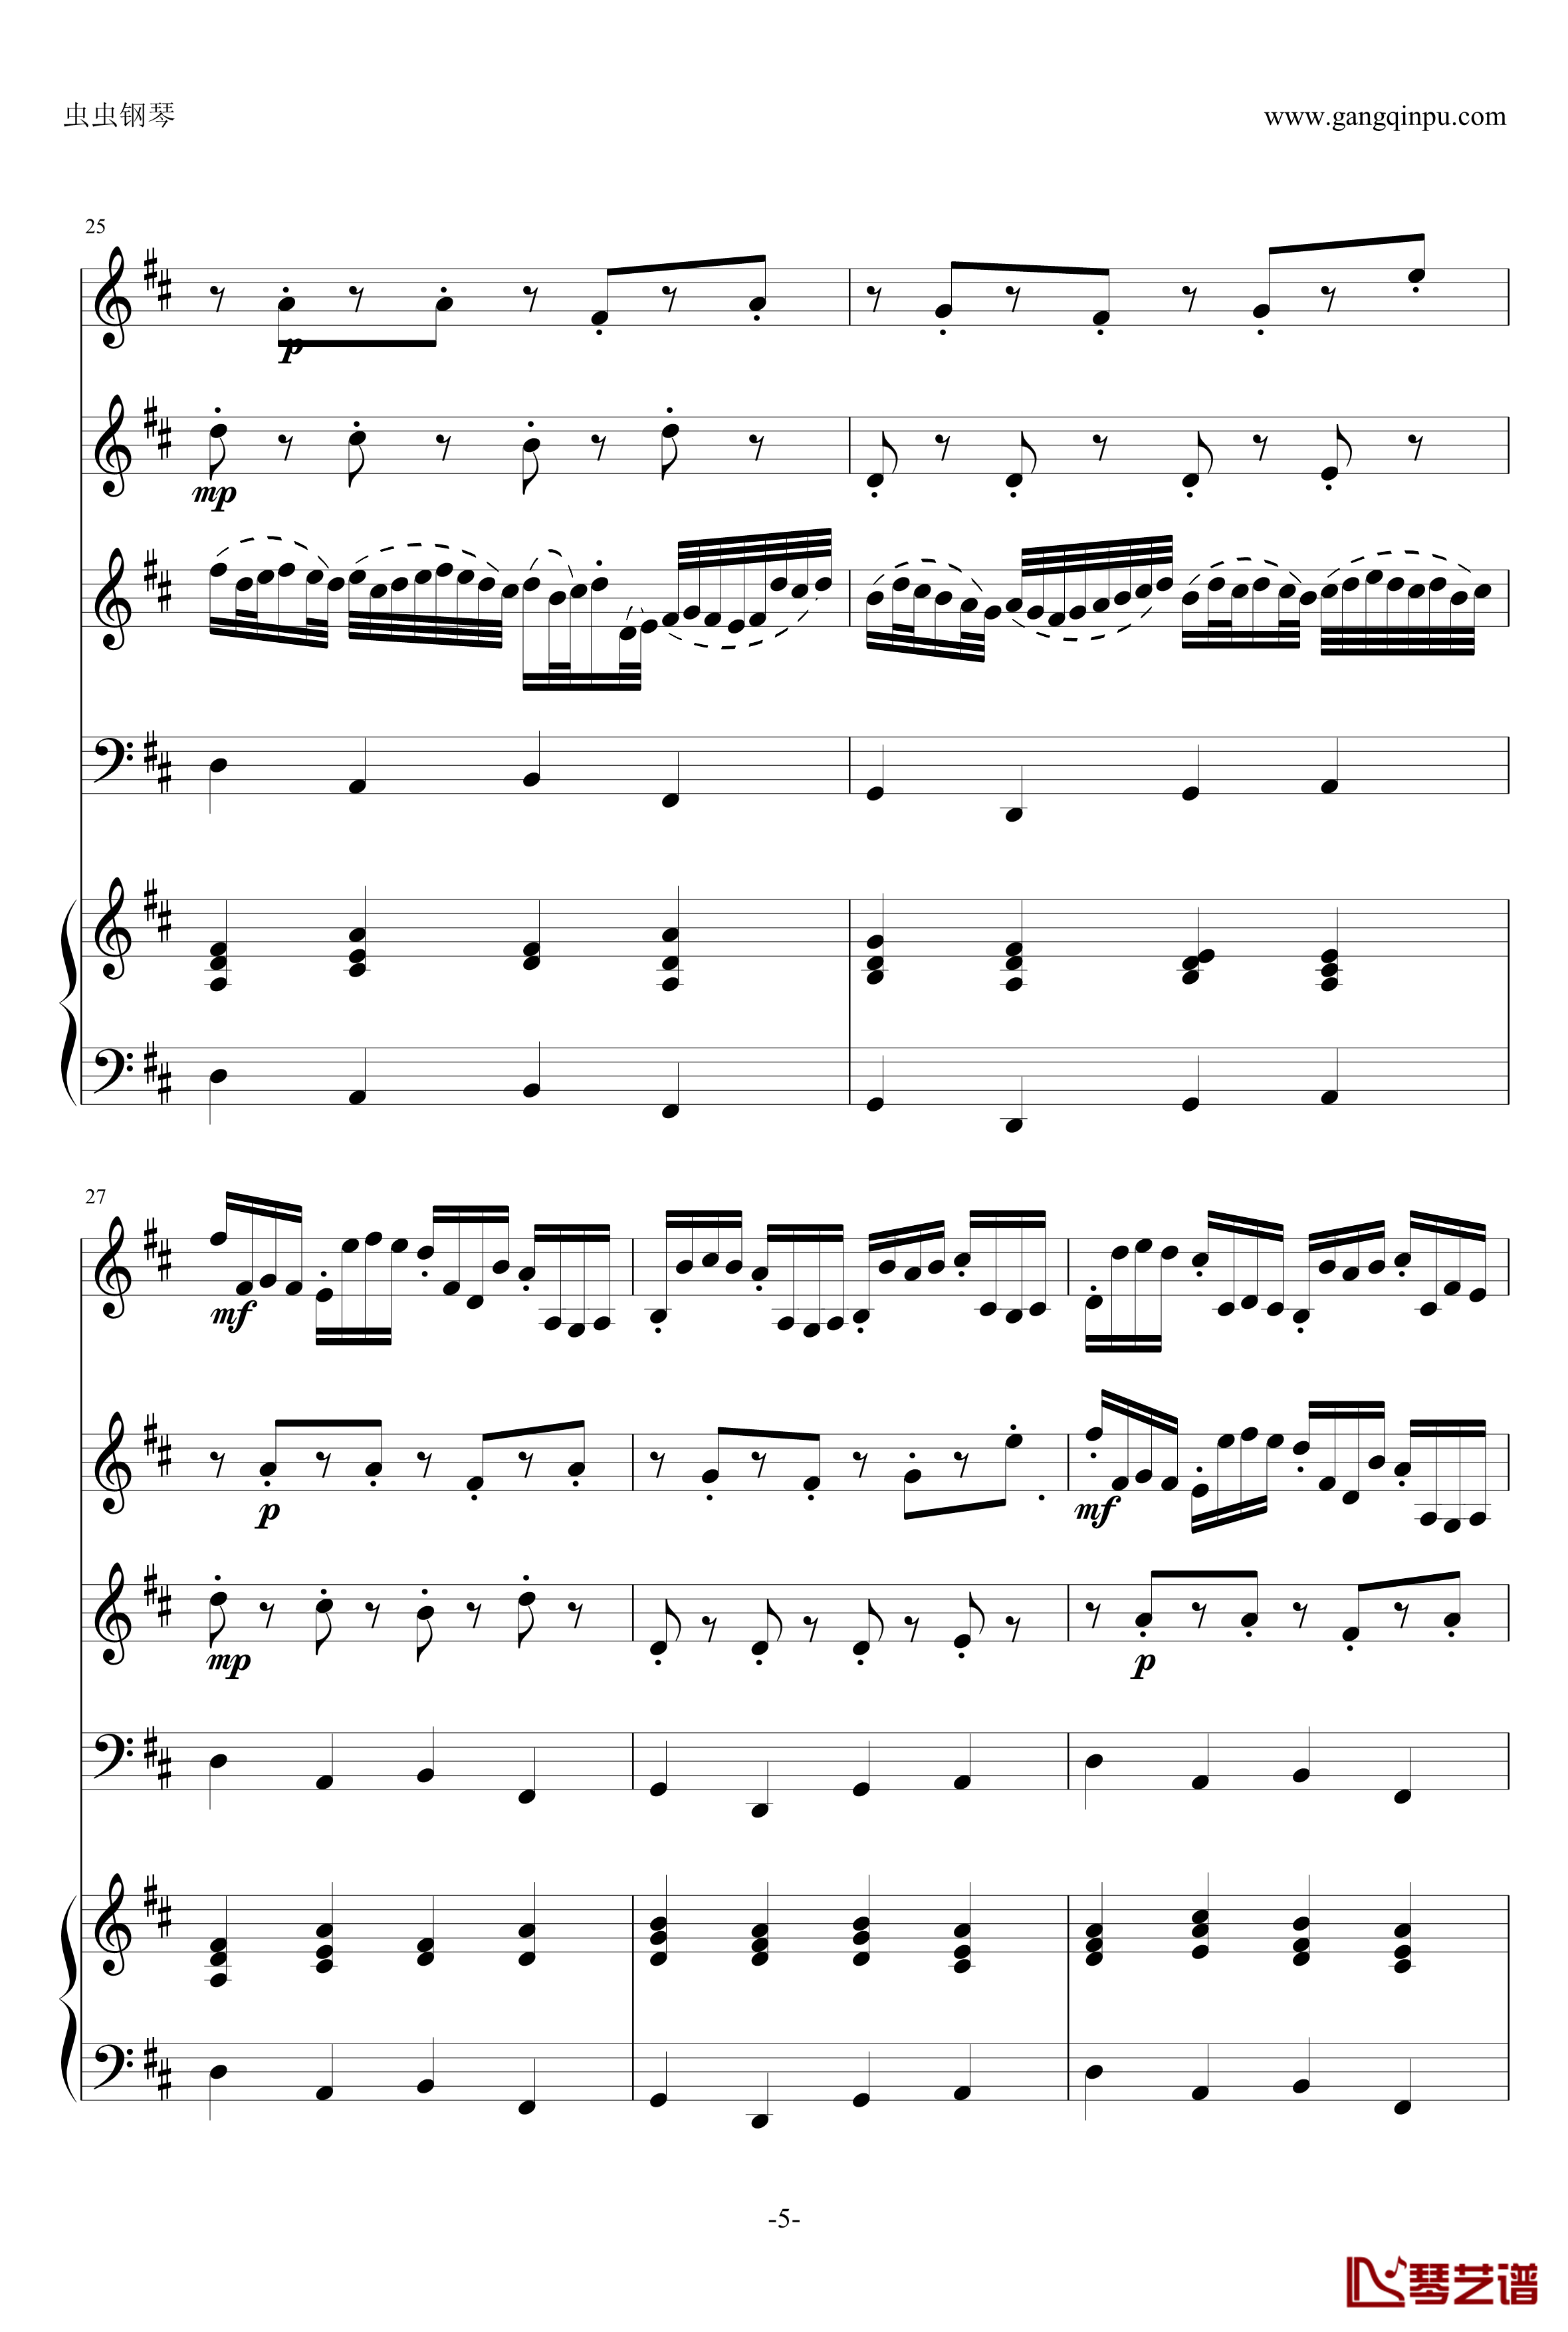 卡农钢琴谱-原版引进-帕赫贝尔-Pachelbel5